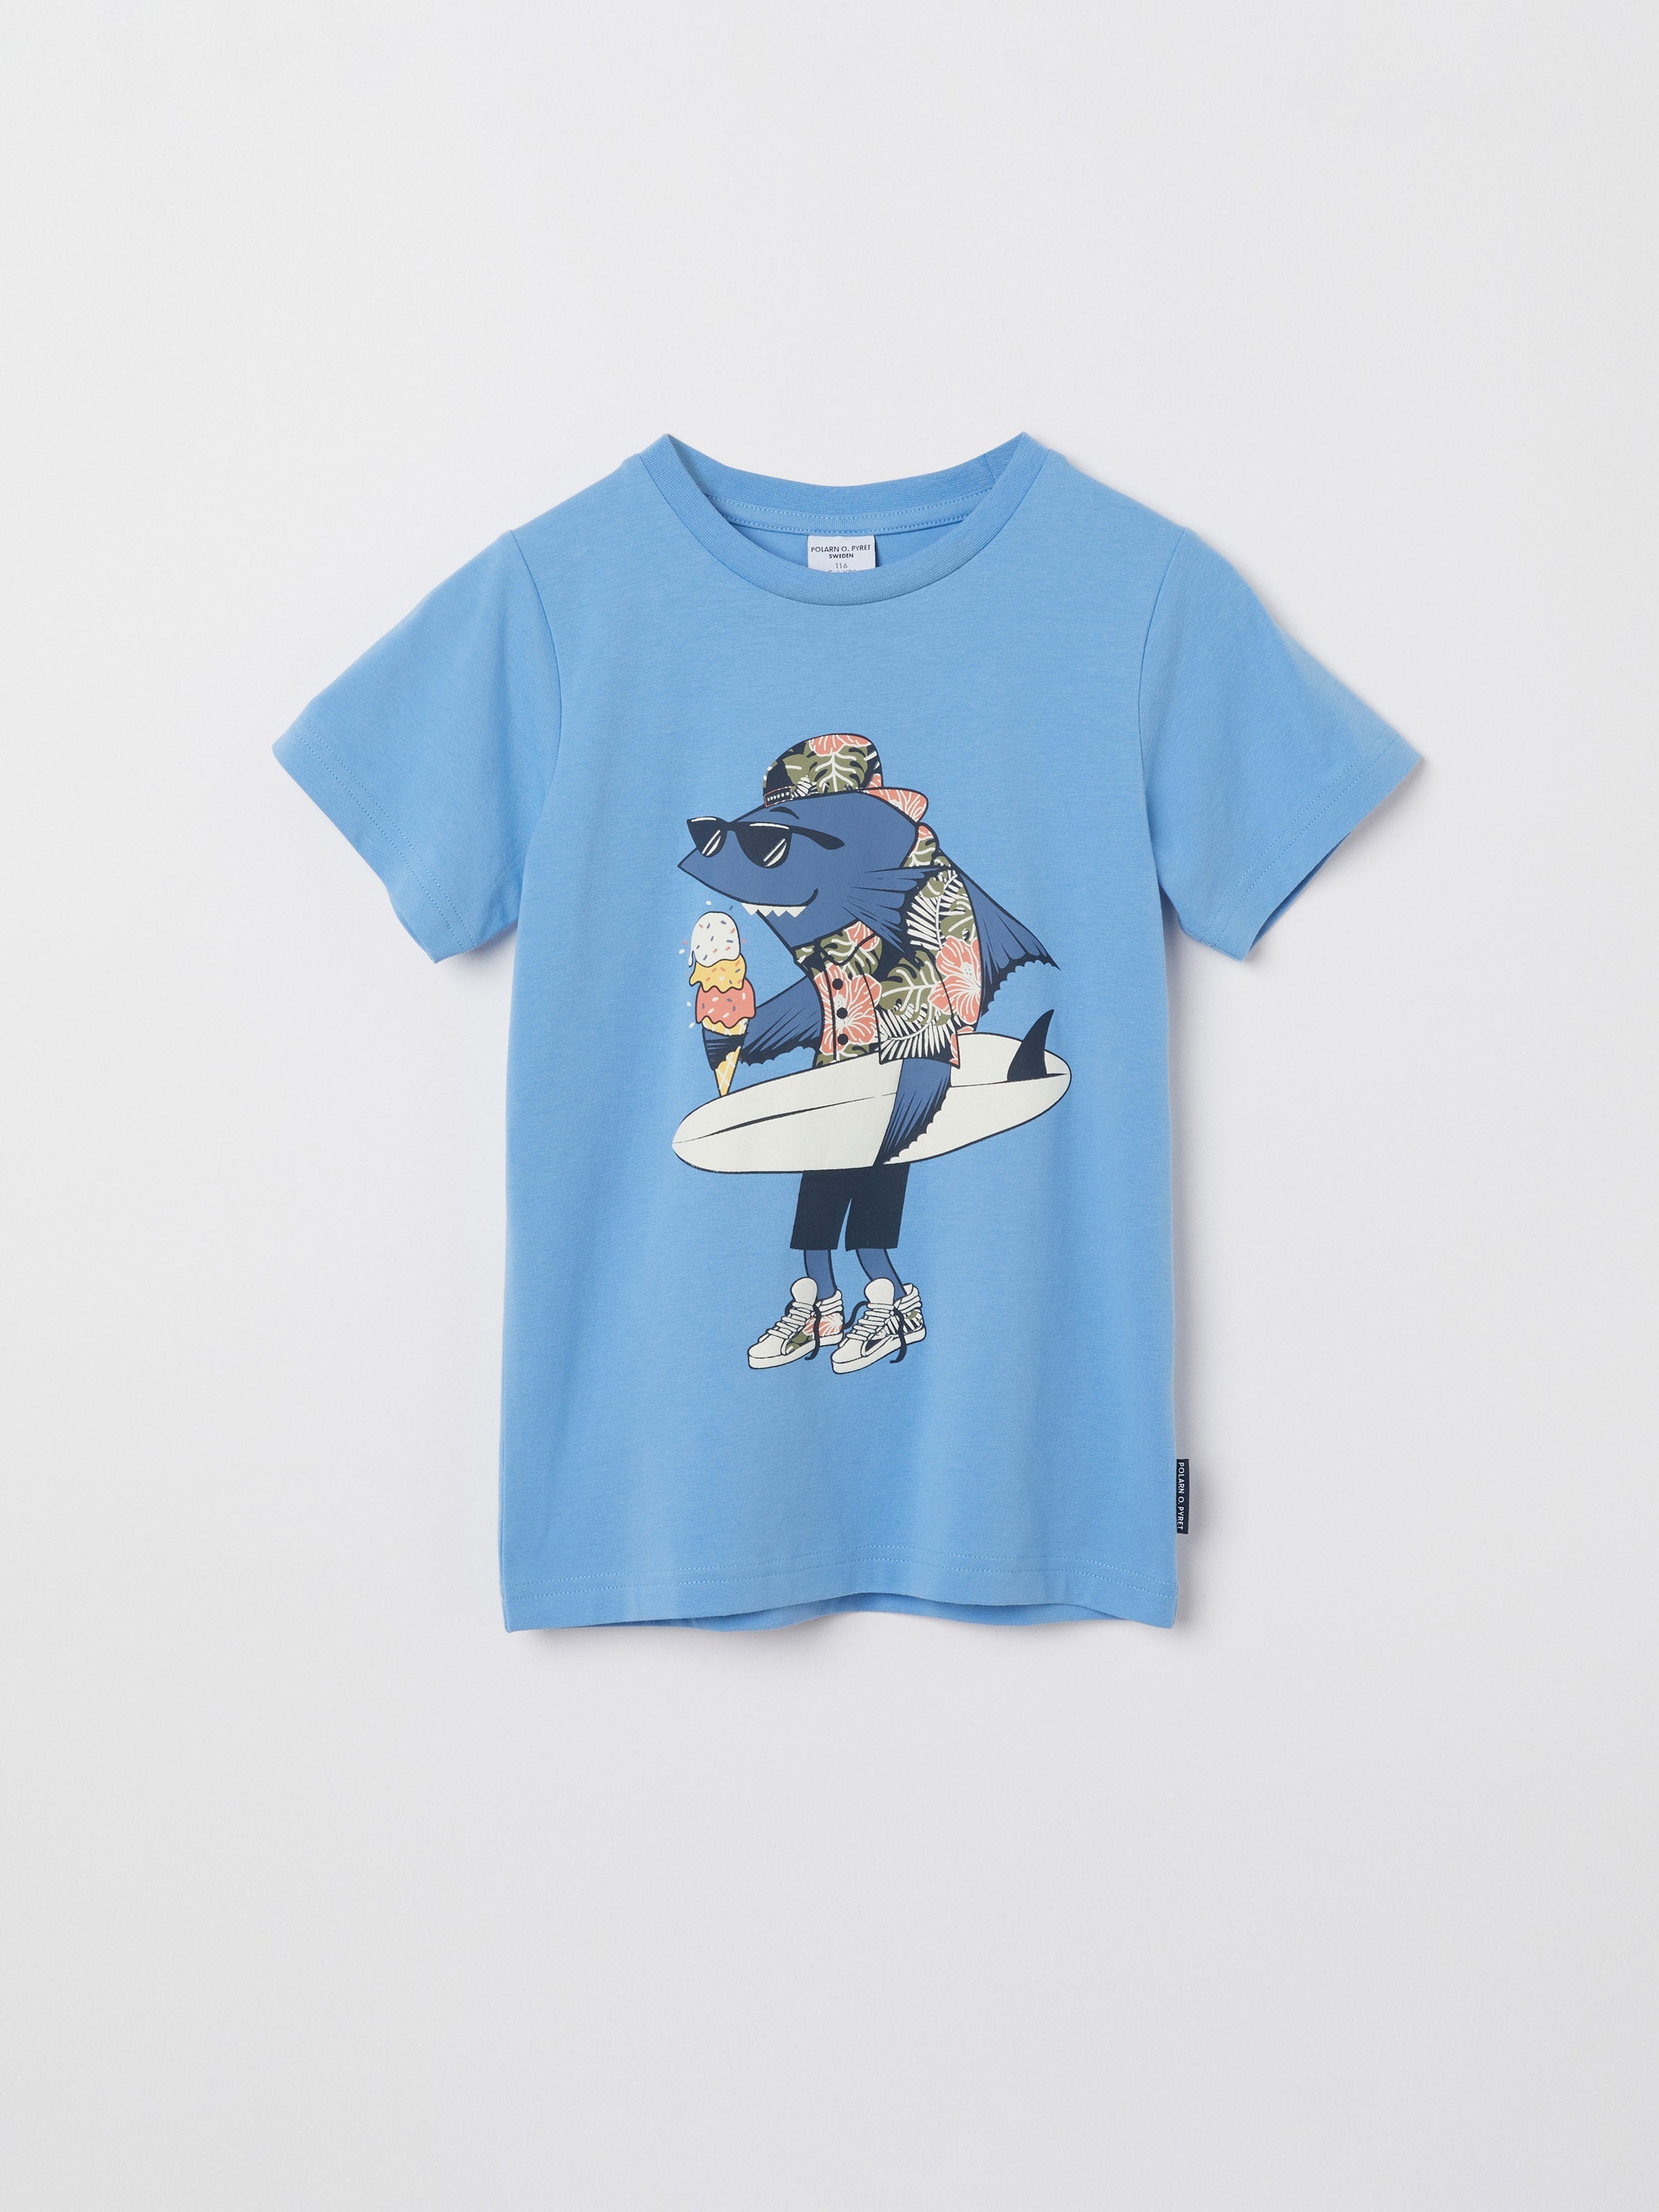 Shark Print Kids T-Shirt